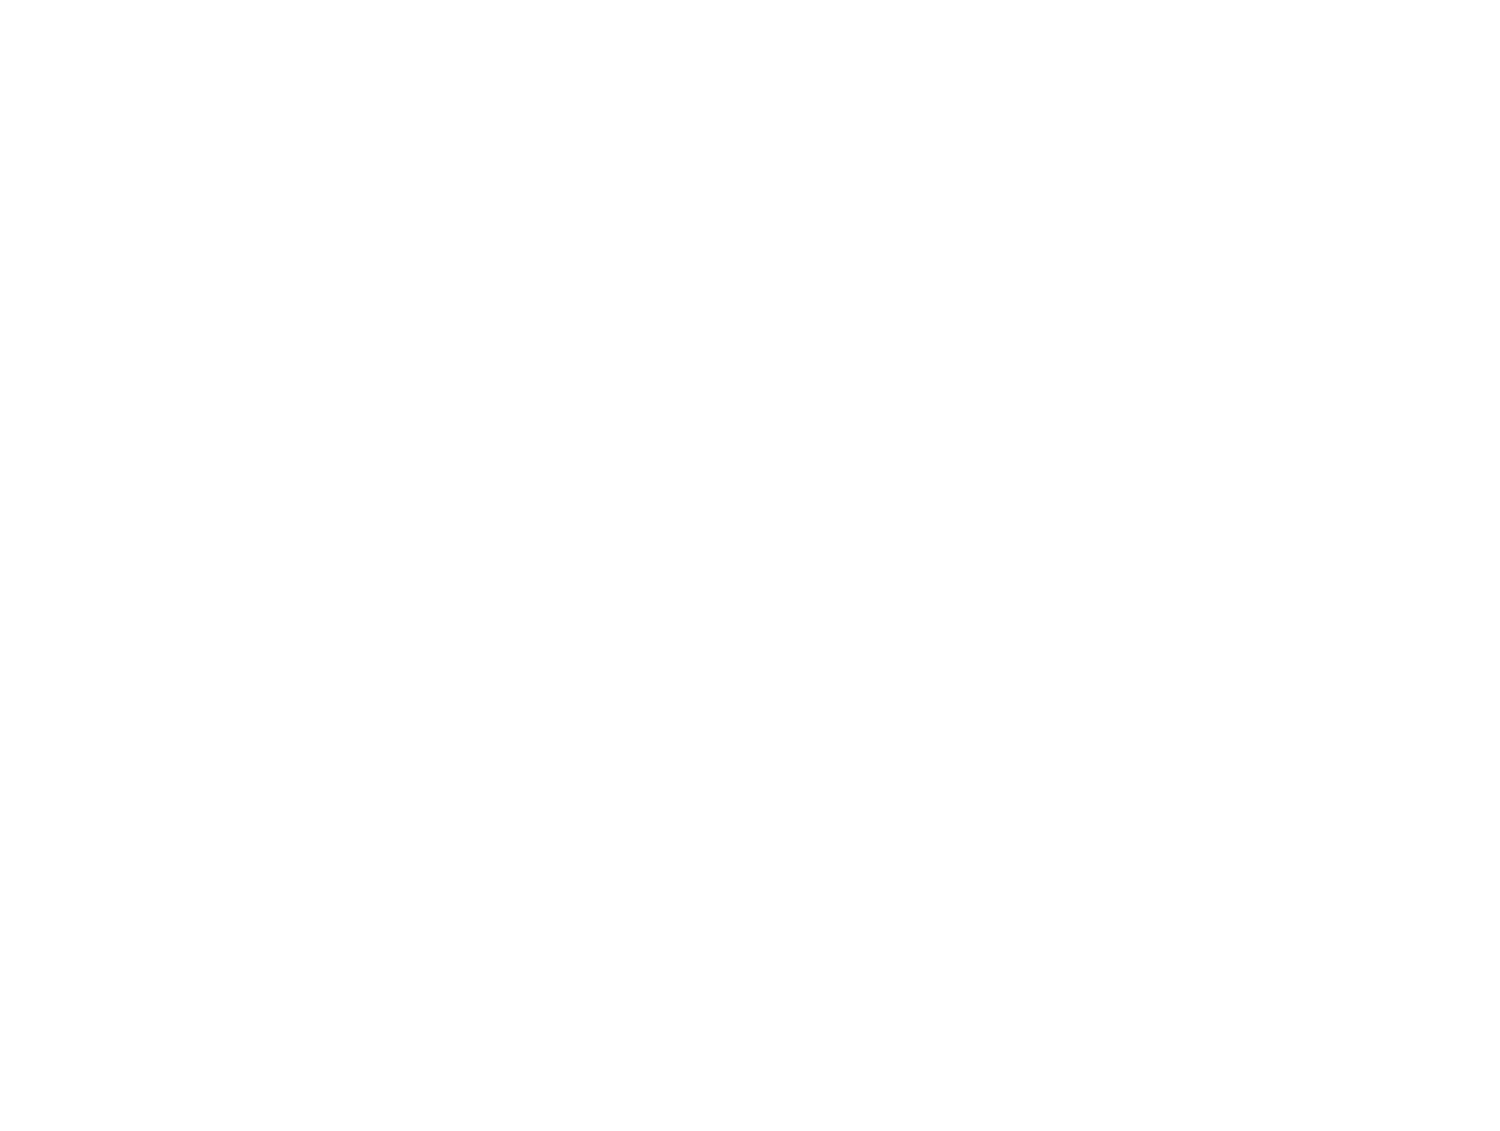 She Said. She Led. She Is.